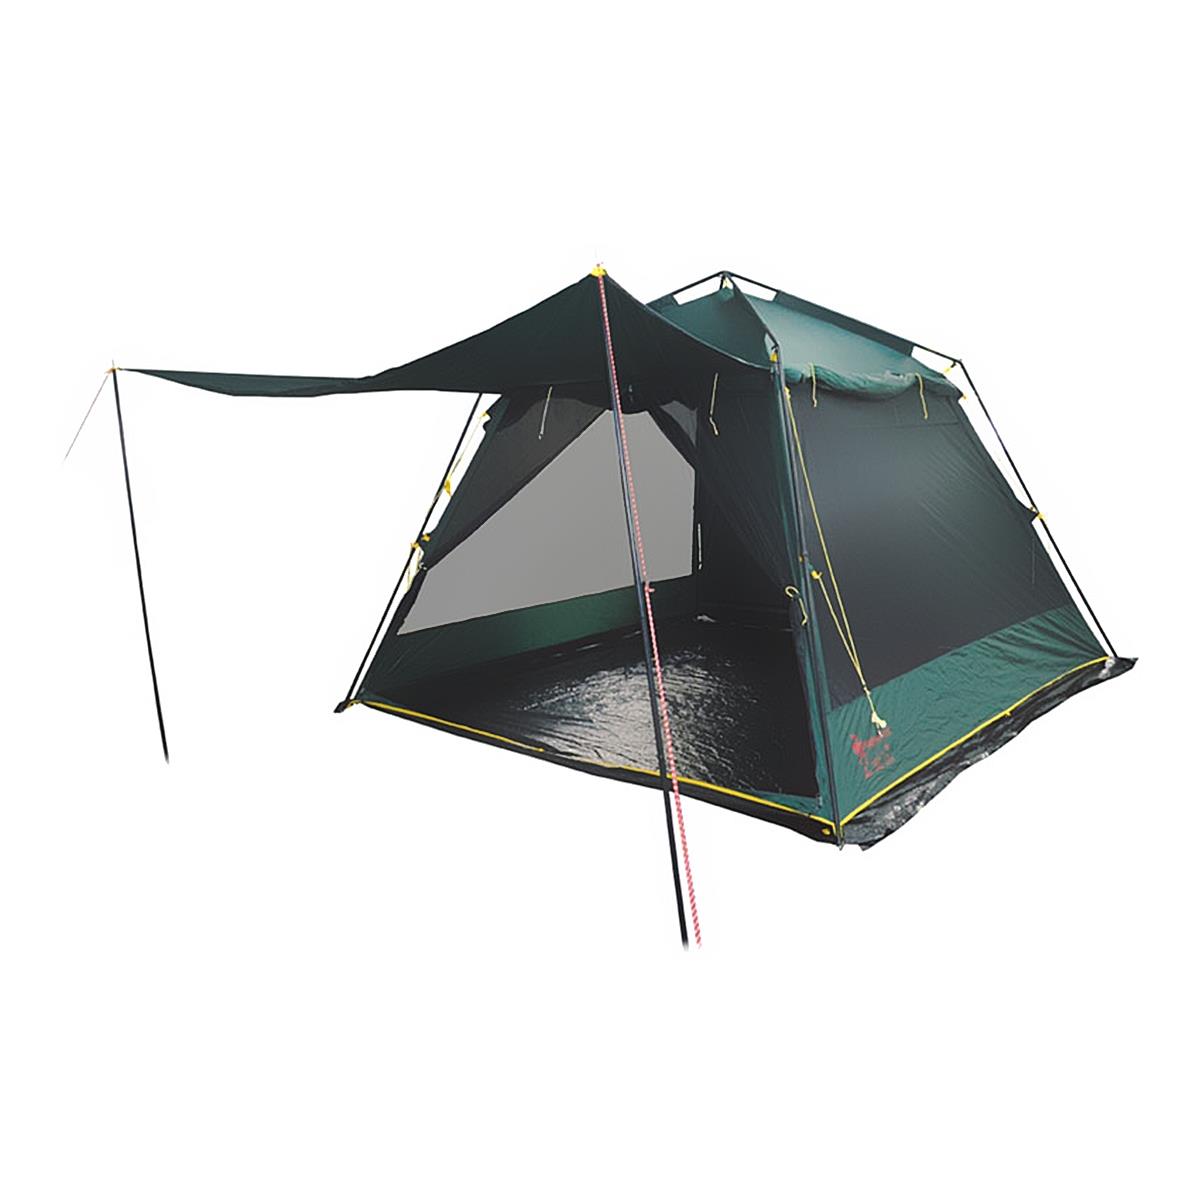 Тент-палатка BUNGALOW LUX GREEN V2 TRT-85 Tramp triol вольер тент для собак xl